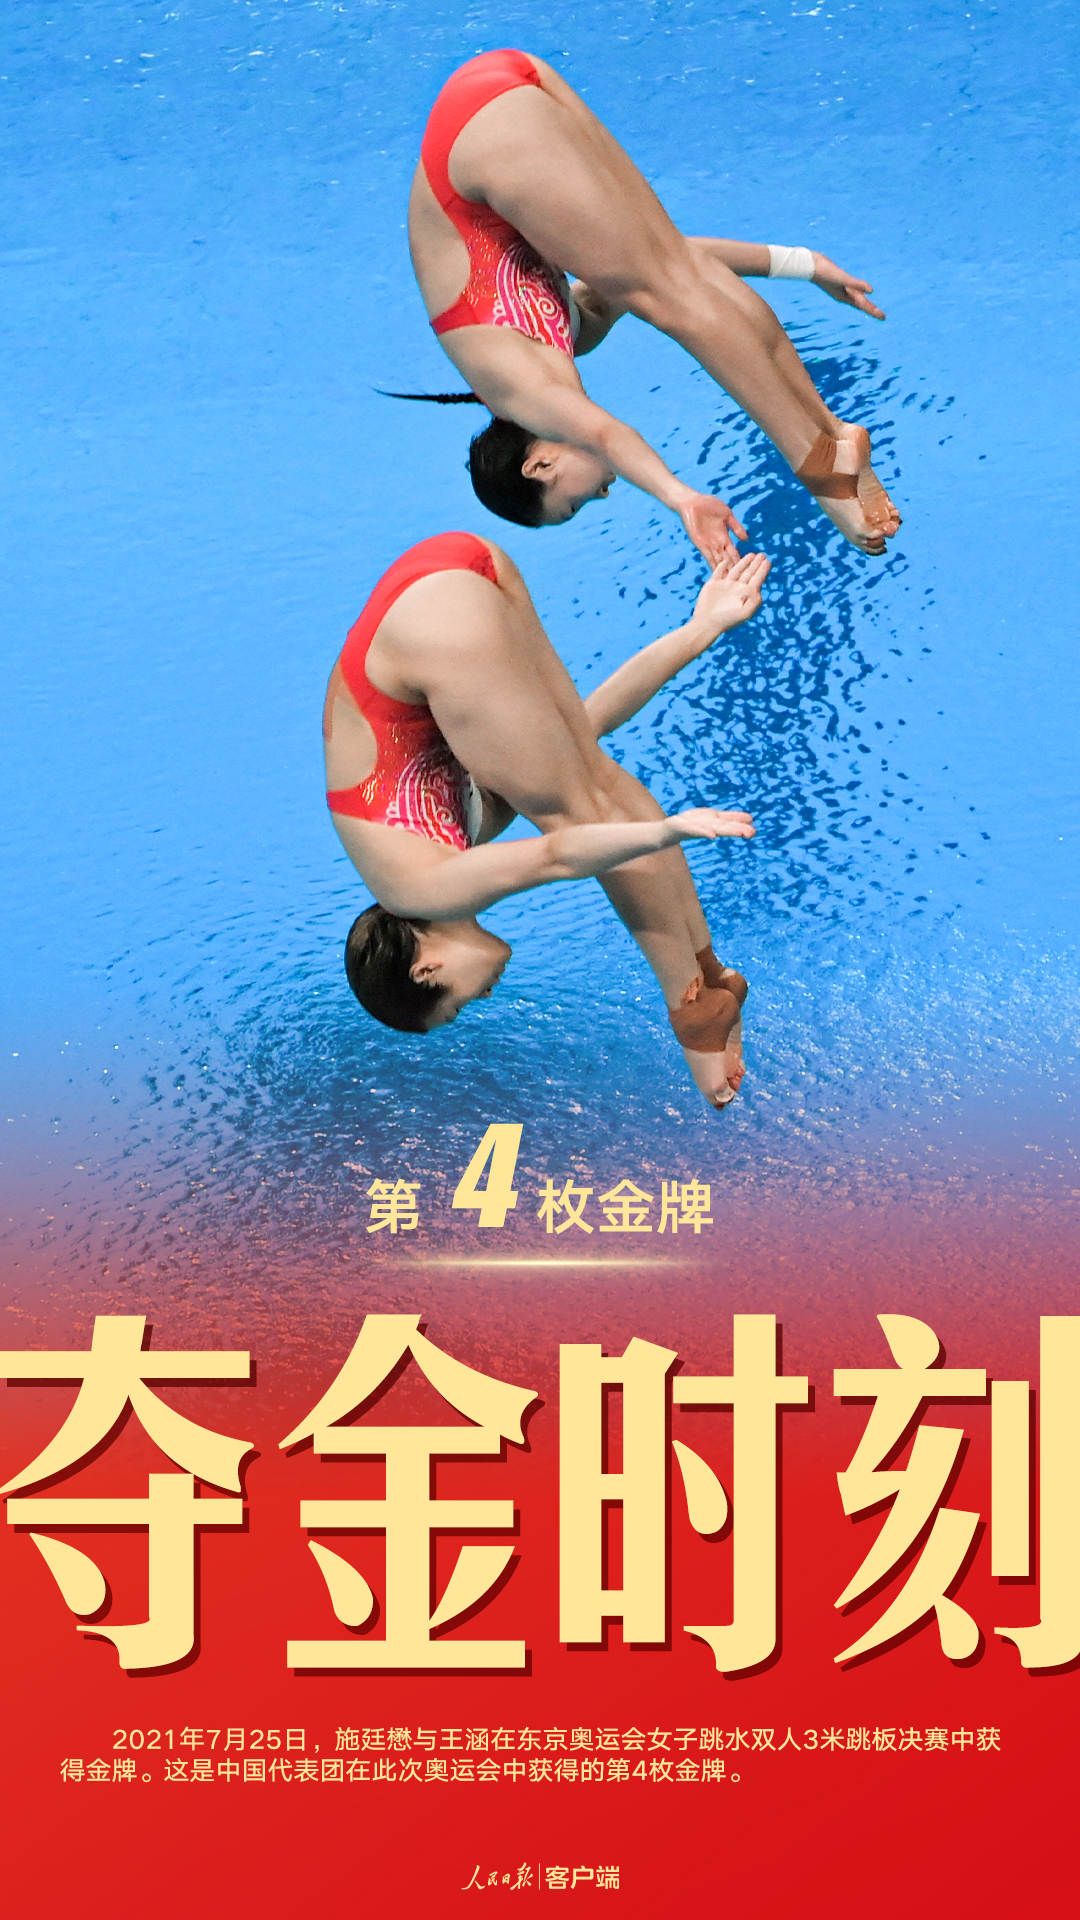 第四金!施廷懋,王涵夺得跳水女子双人3米板金牌